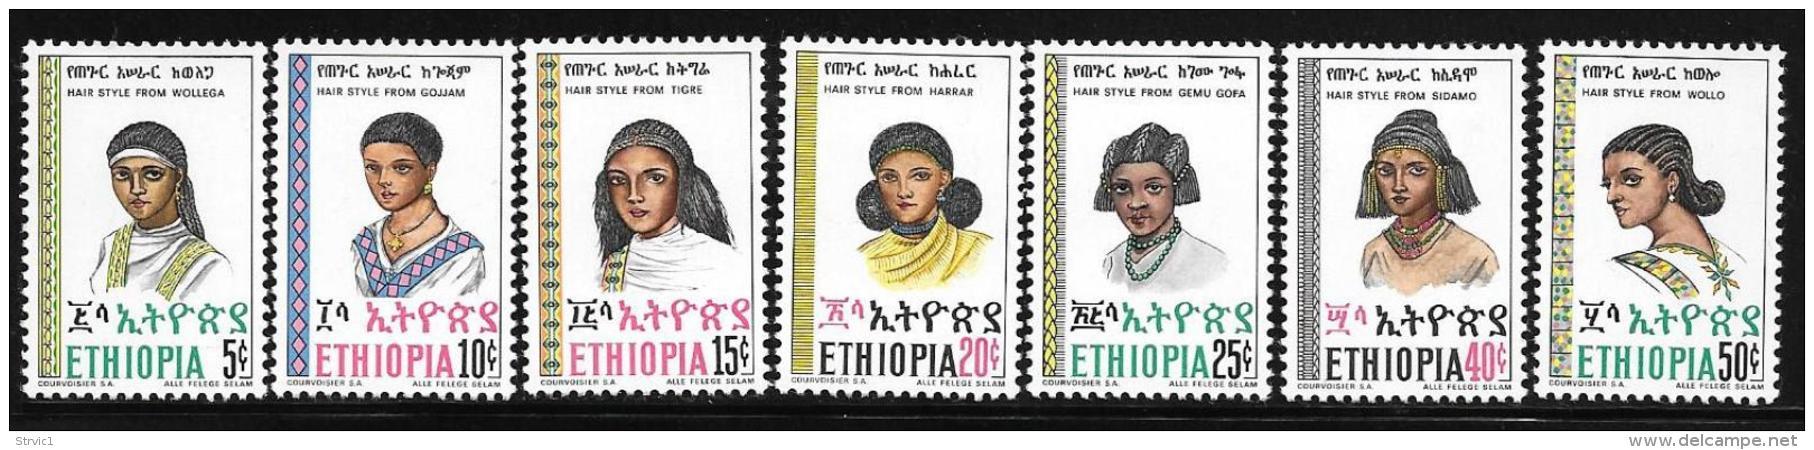 Ethiopia, Scott #832-8 MNH Set Hairstyles, 1977 - Ethiopia